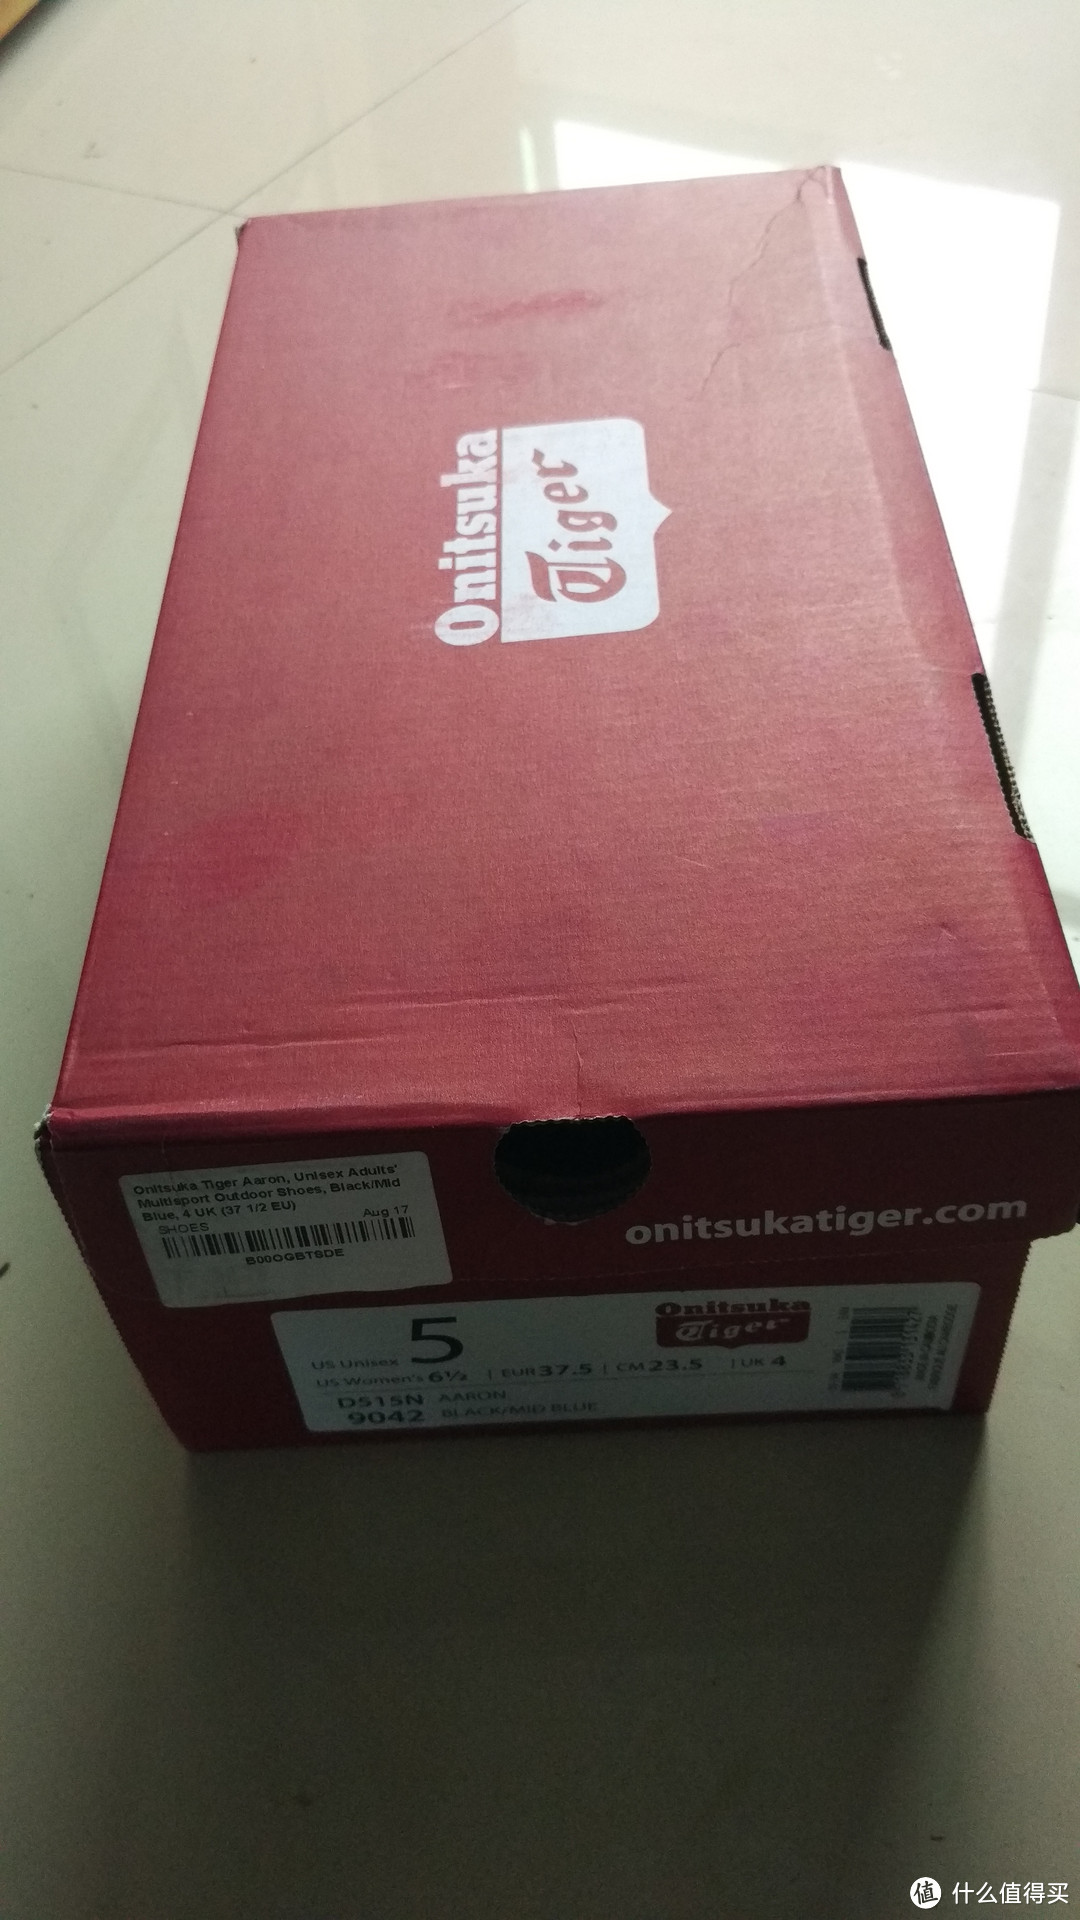 英国亚马逊的“大白菜”Onitsuka Tiger 鬼冢虎 运动鞋，我又拣到了！